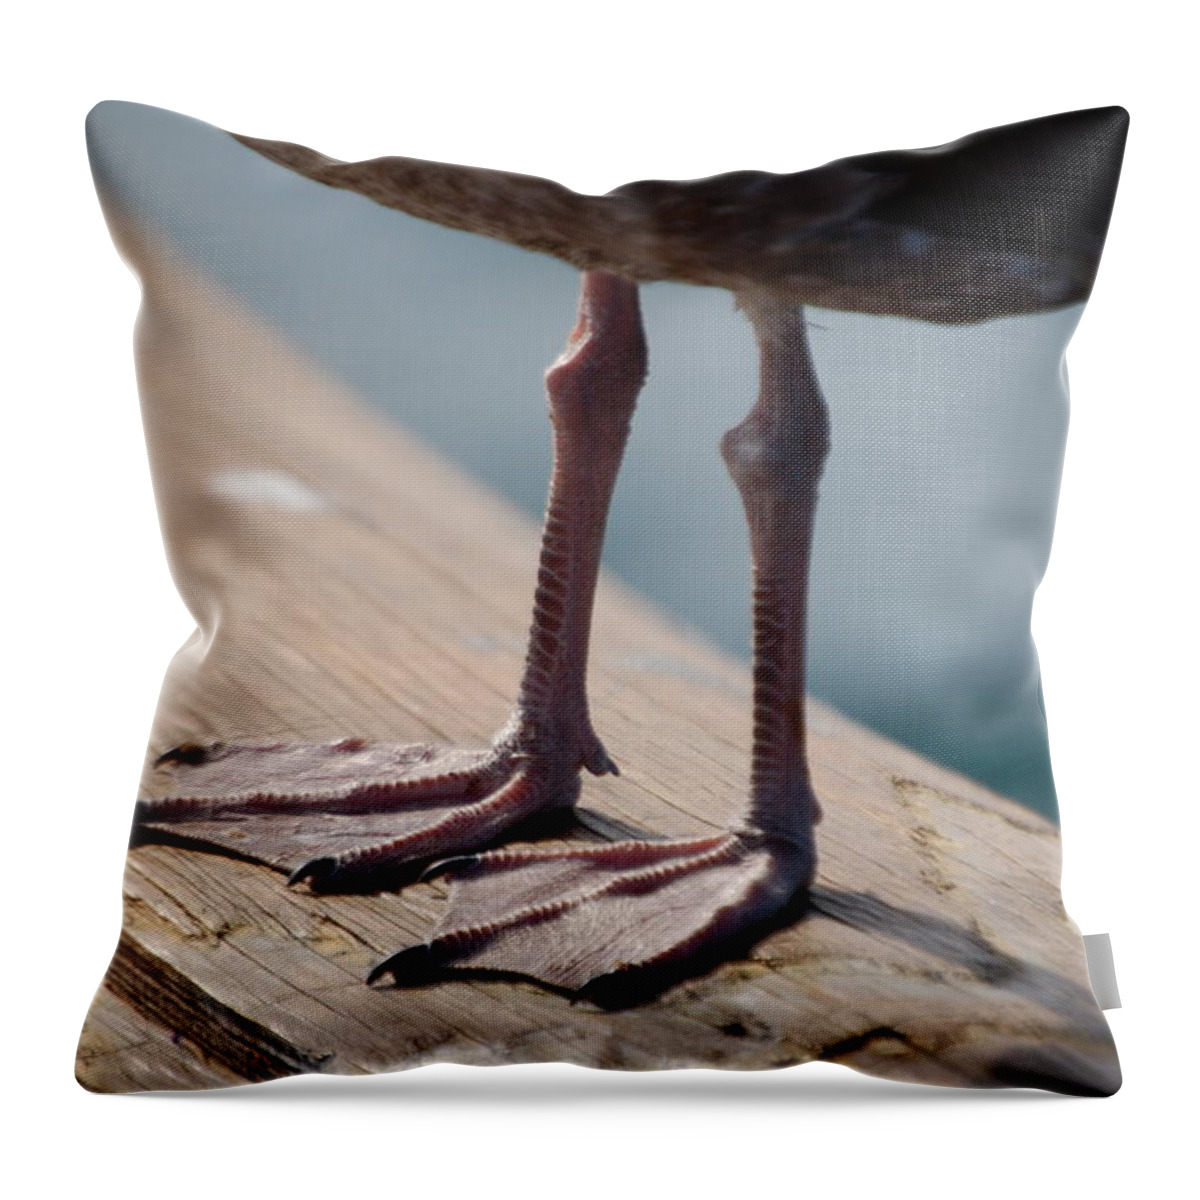 Bird Throw Pillow featuring the photograph Little Legs by Maria Aduke Alabi